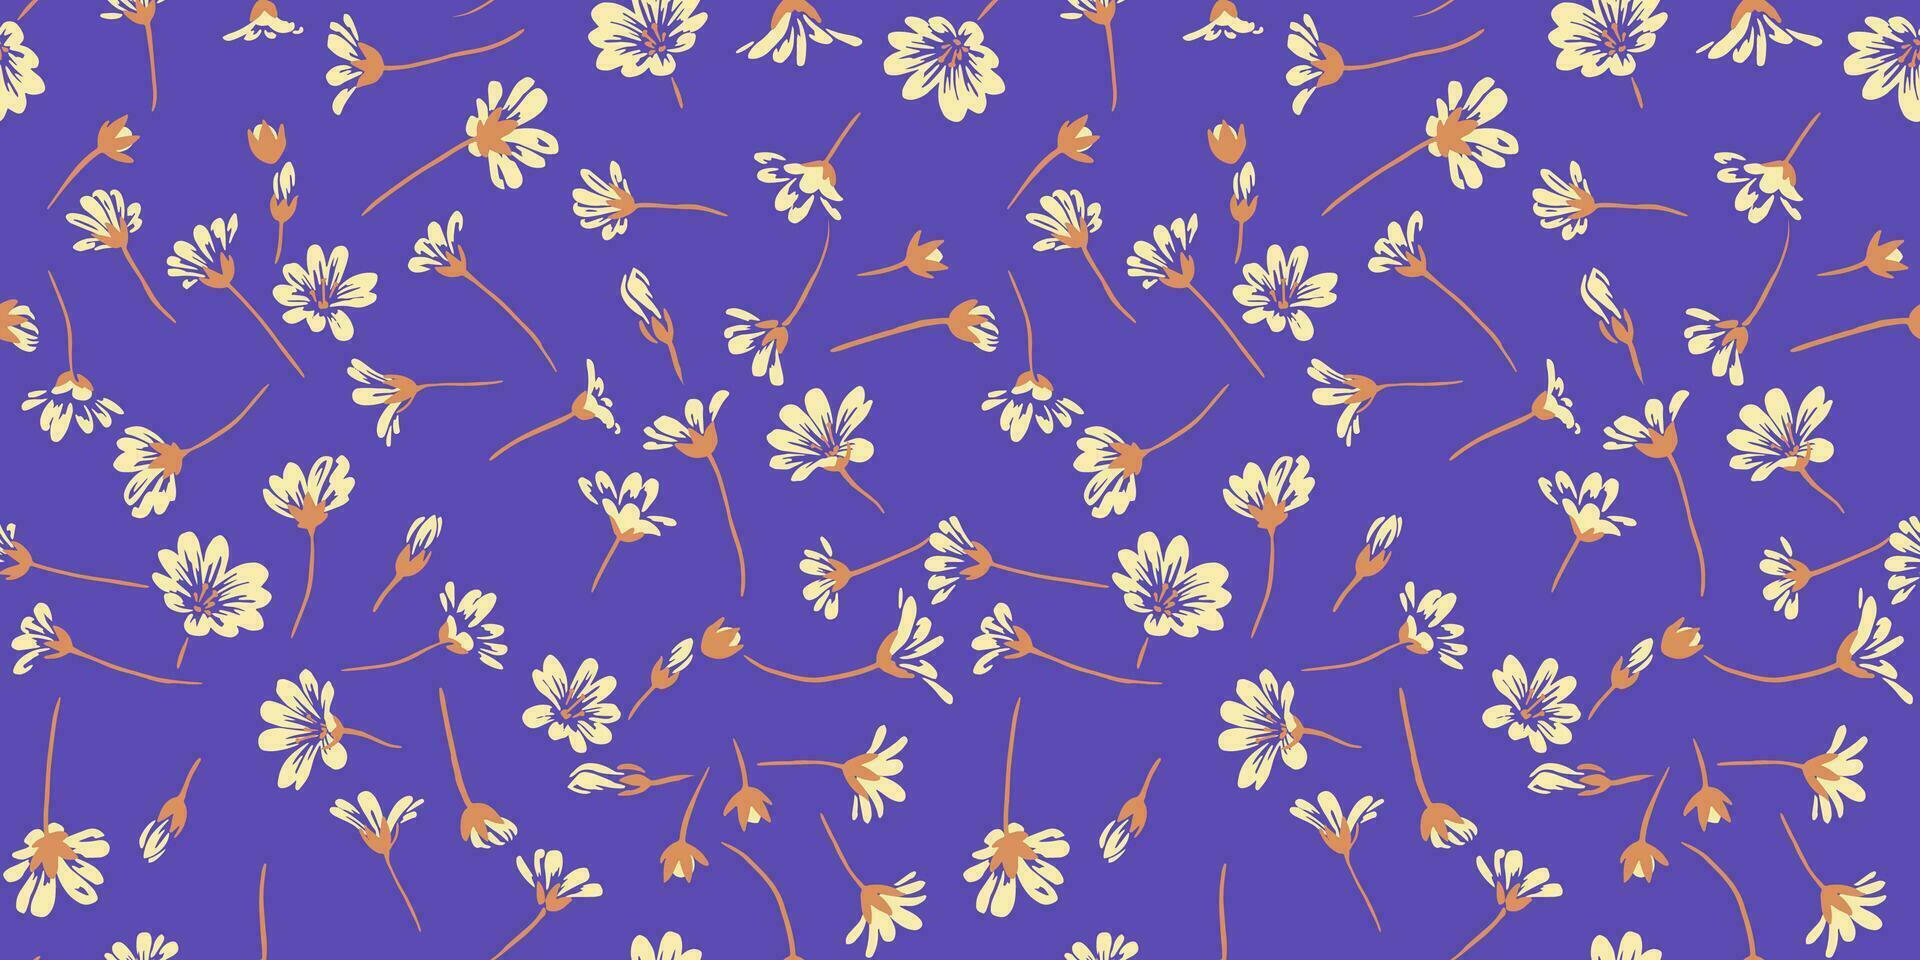 beschwingt Sommer- einfach Blumen- Muster auf ein violett Hintergrund. Vektor Hand gezeichnet skizzieren. kreativ winzig gestalten wild Blumen nahtlos Drucken. Design zum Mode, Stoff, und Textil.